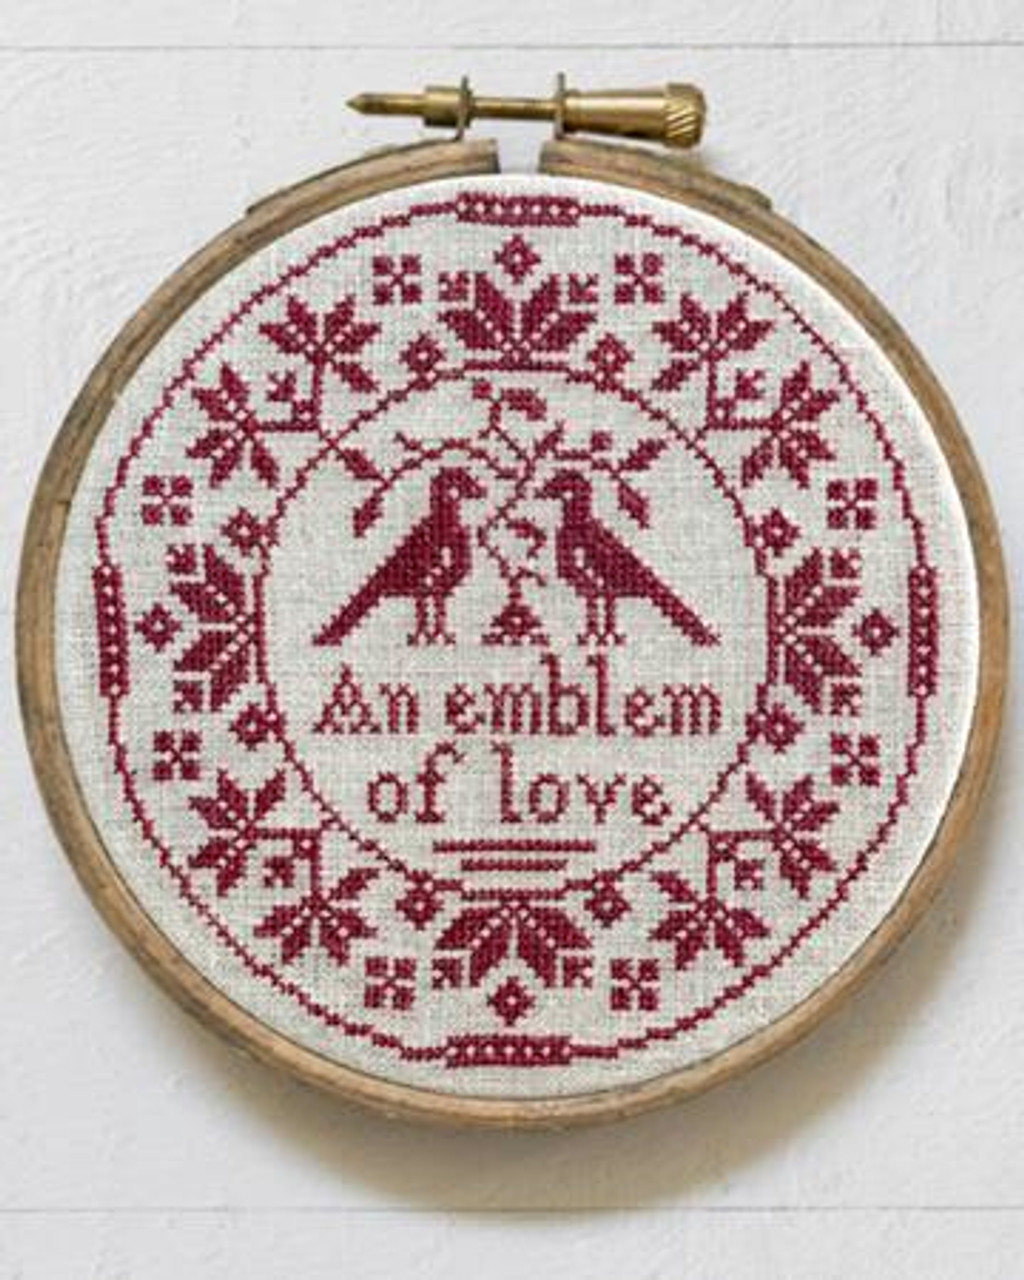 An Emblem of Love: A Quaker Cross-Stitch Hoop 89 crosses high